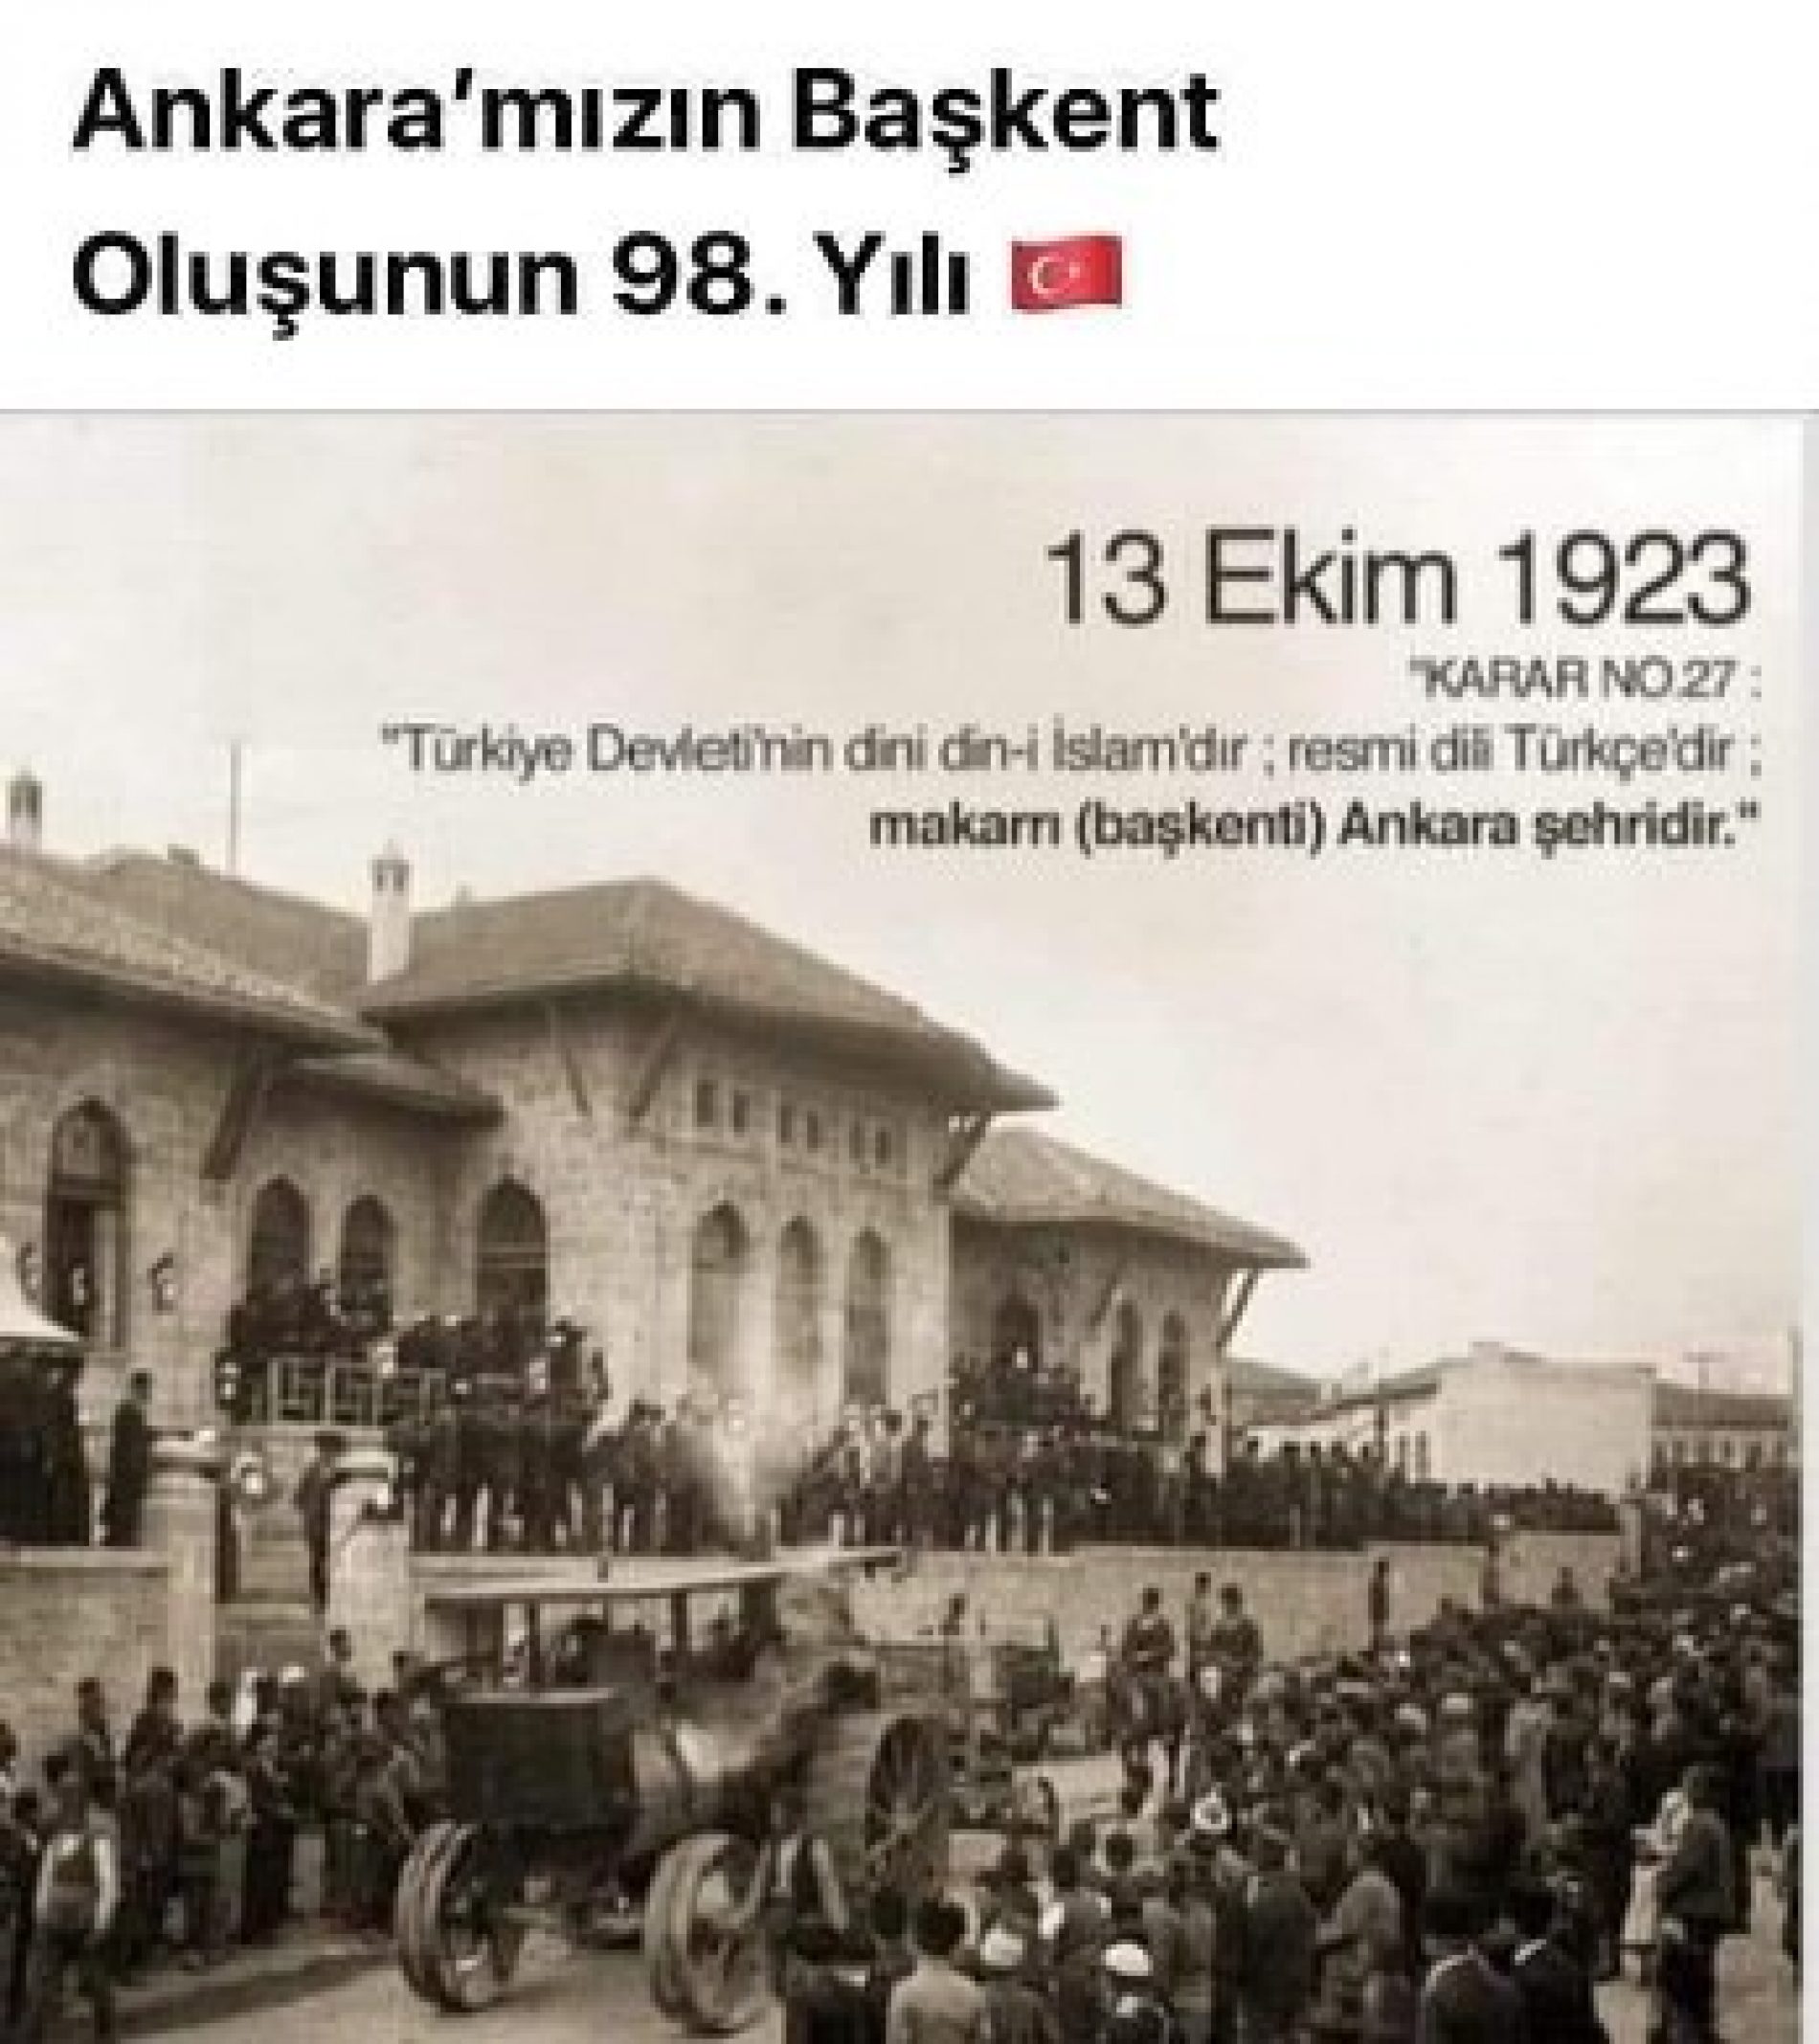 TYSD Genel Merkezi ve 132 Şubemiz Ankara’mızın Başkent Oluşunun 98. Yılını Kutlar